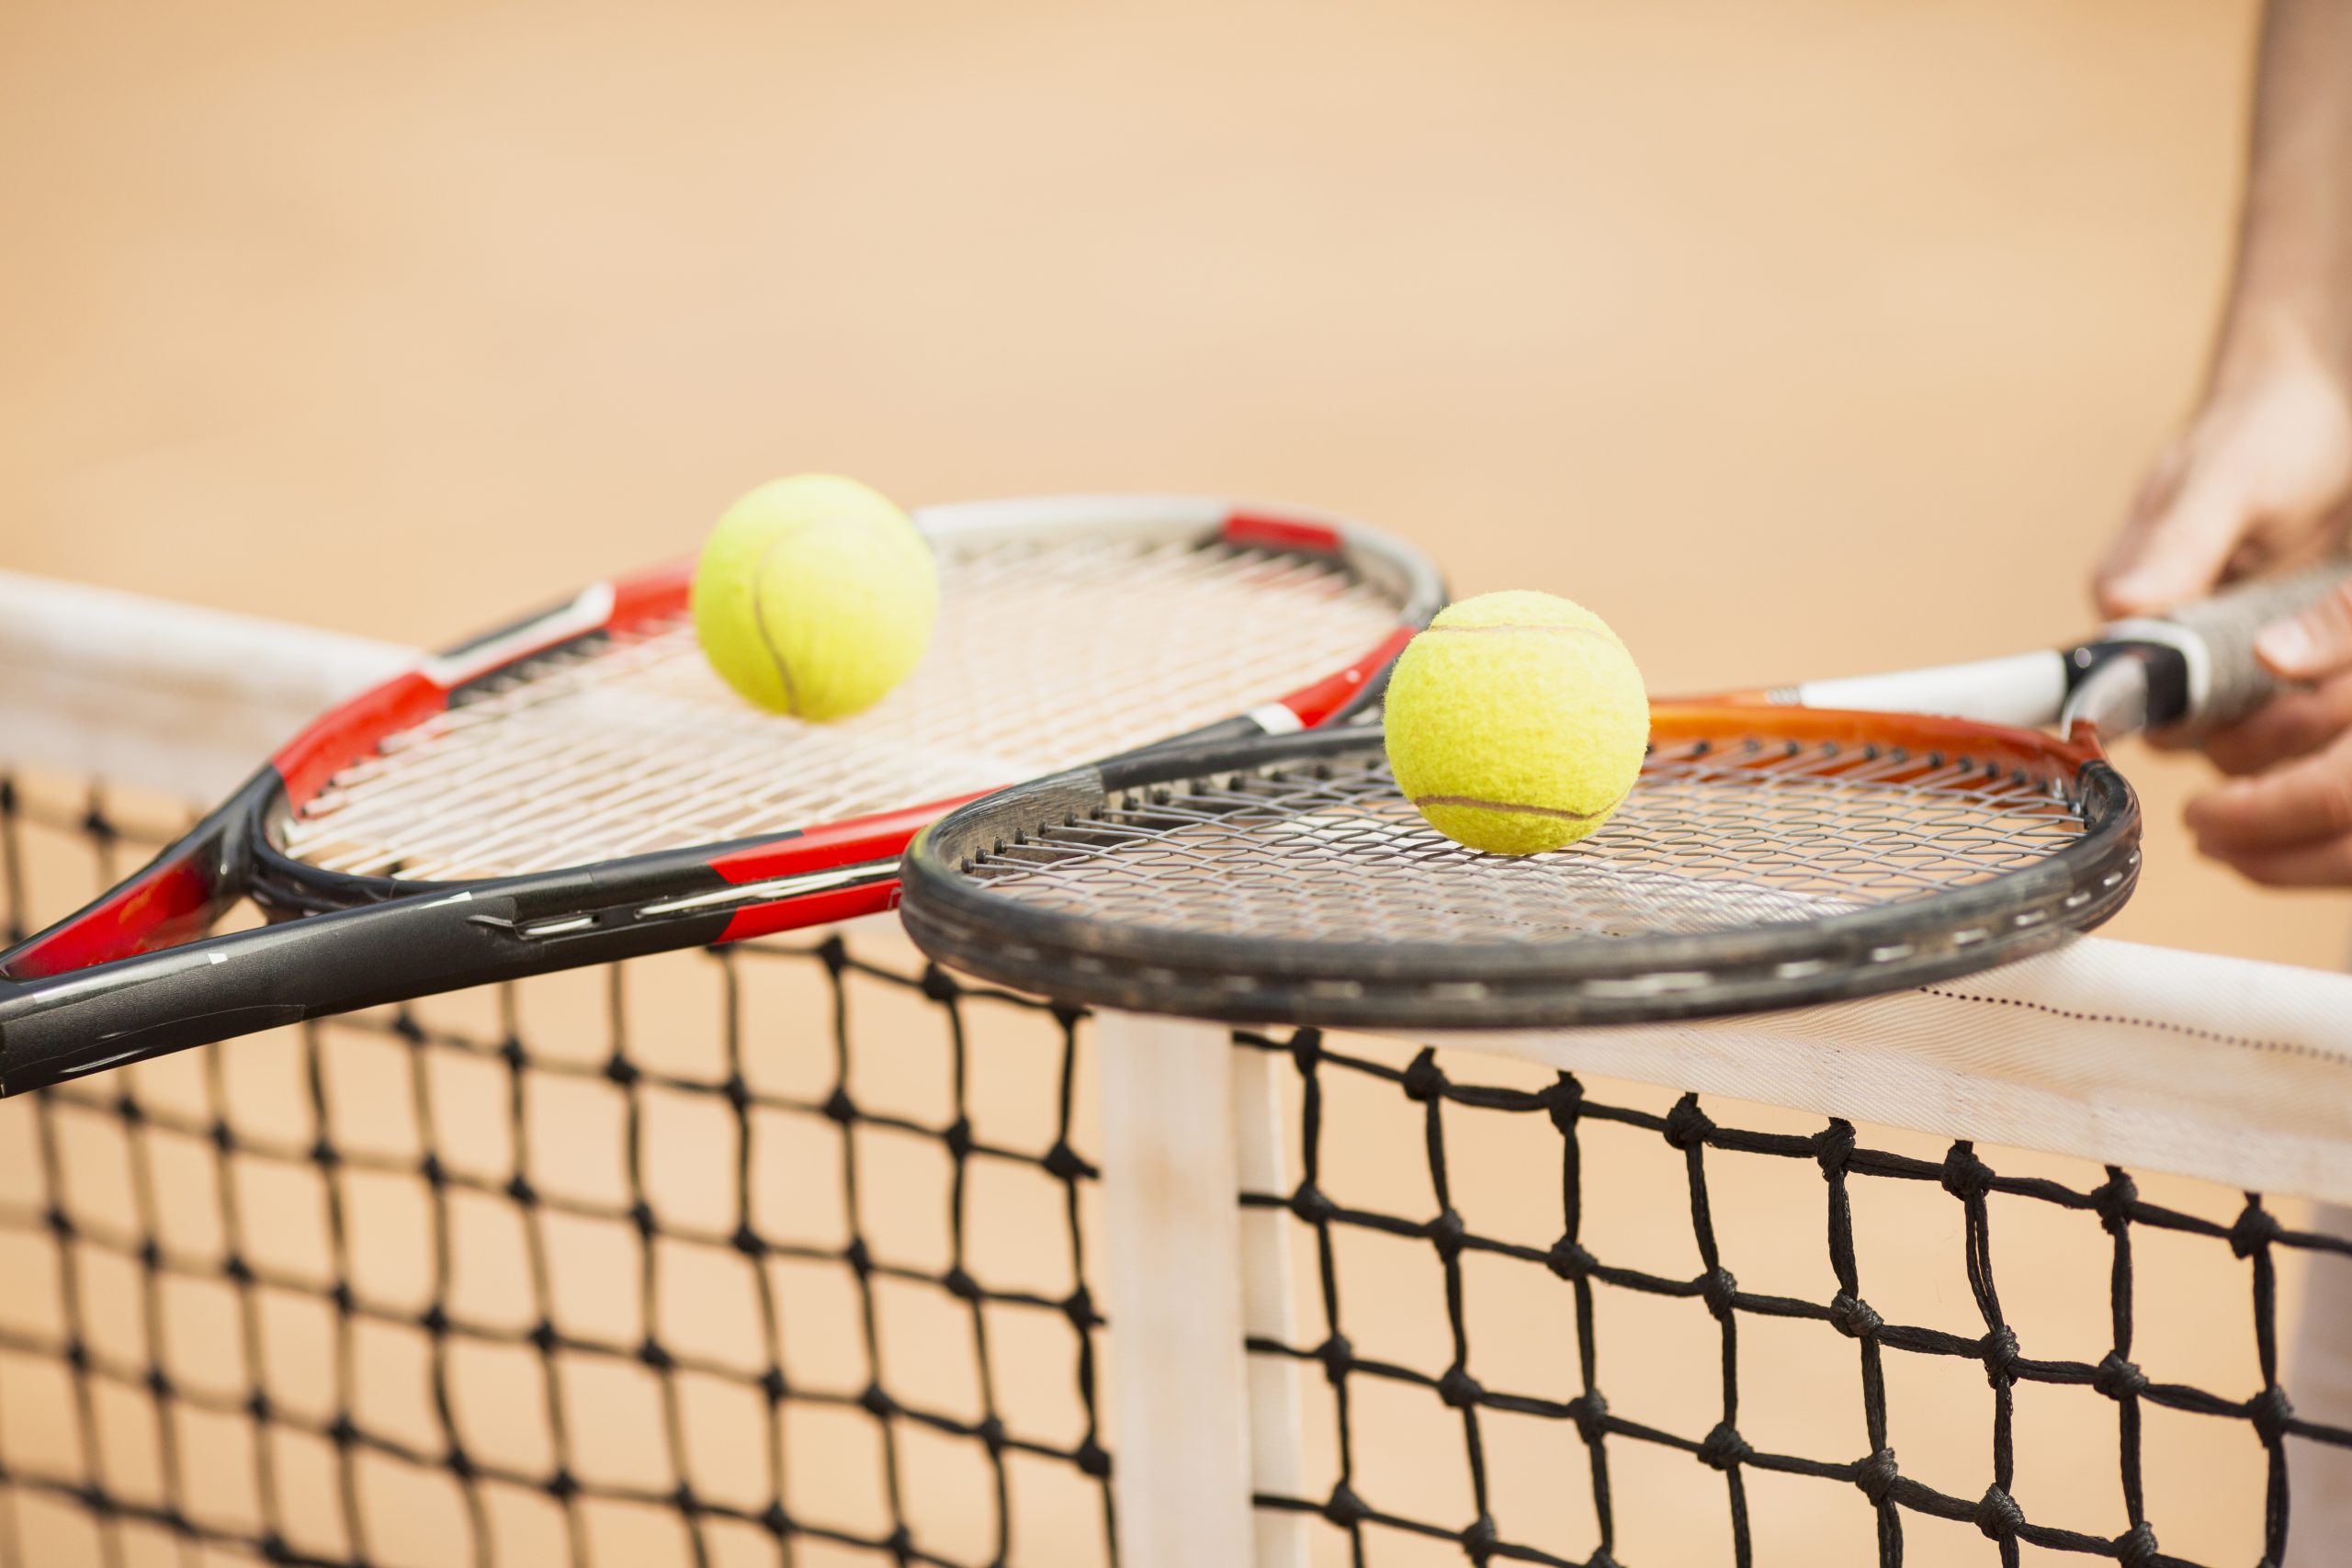 Entendendo as pontuações do tênis e beach tennis